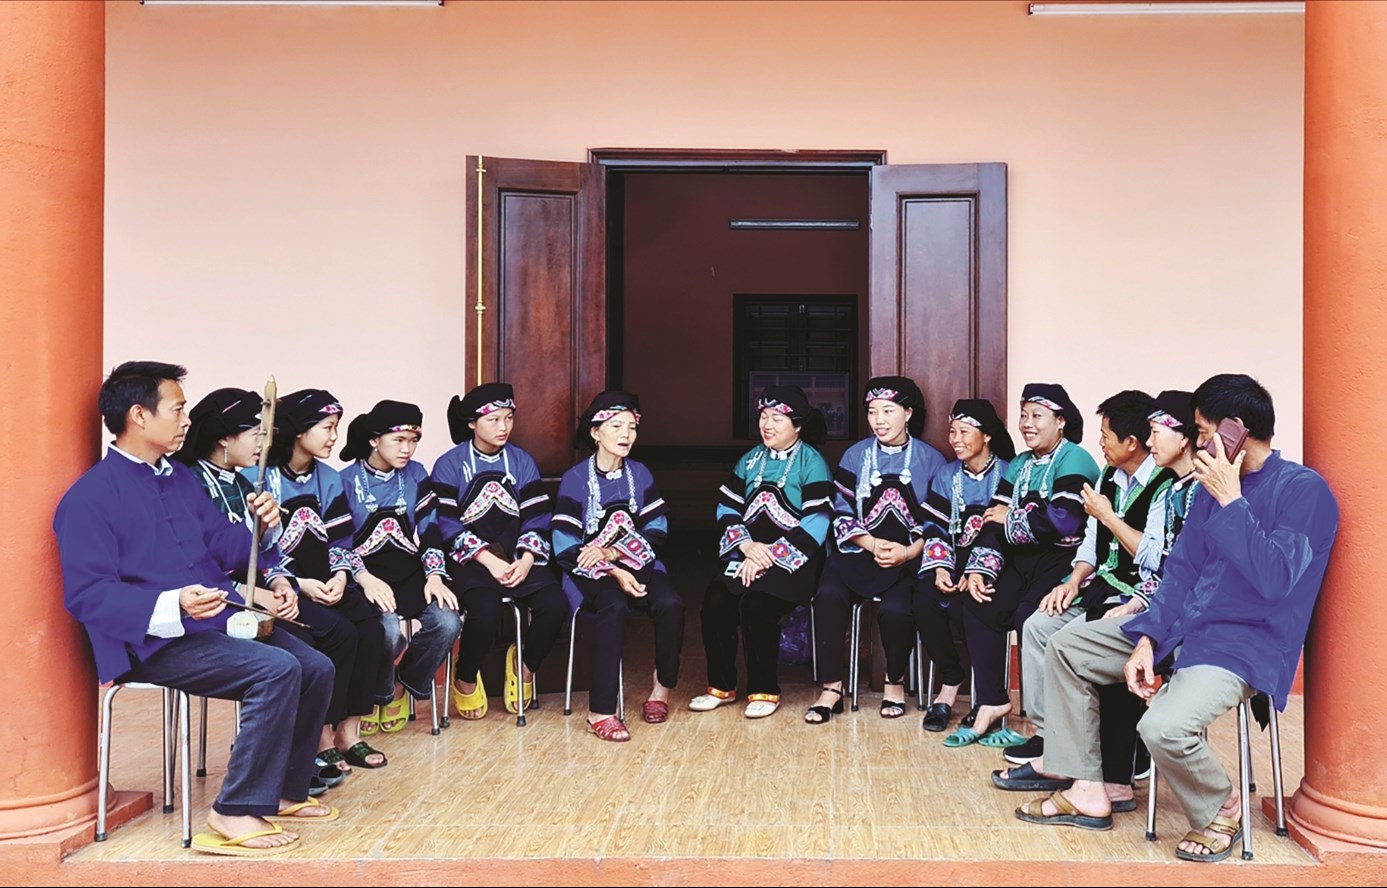 Hiện nay, tỉnh Lào Cai đã thành lập được 3 đội văn nghệ dân tộc Bố Y, mỗi đội gồm 30 thành viên.